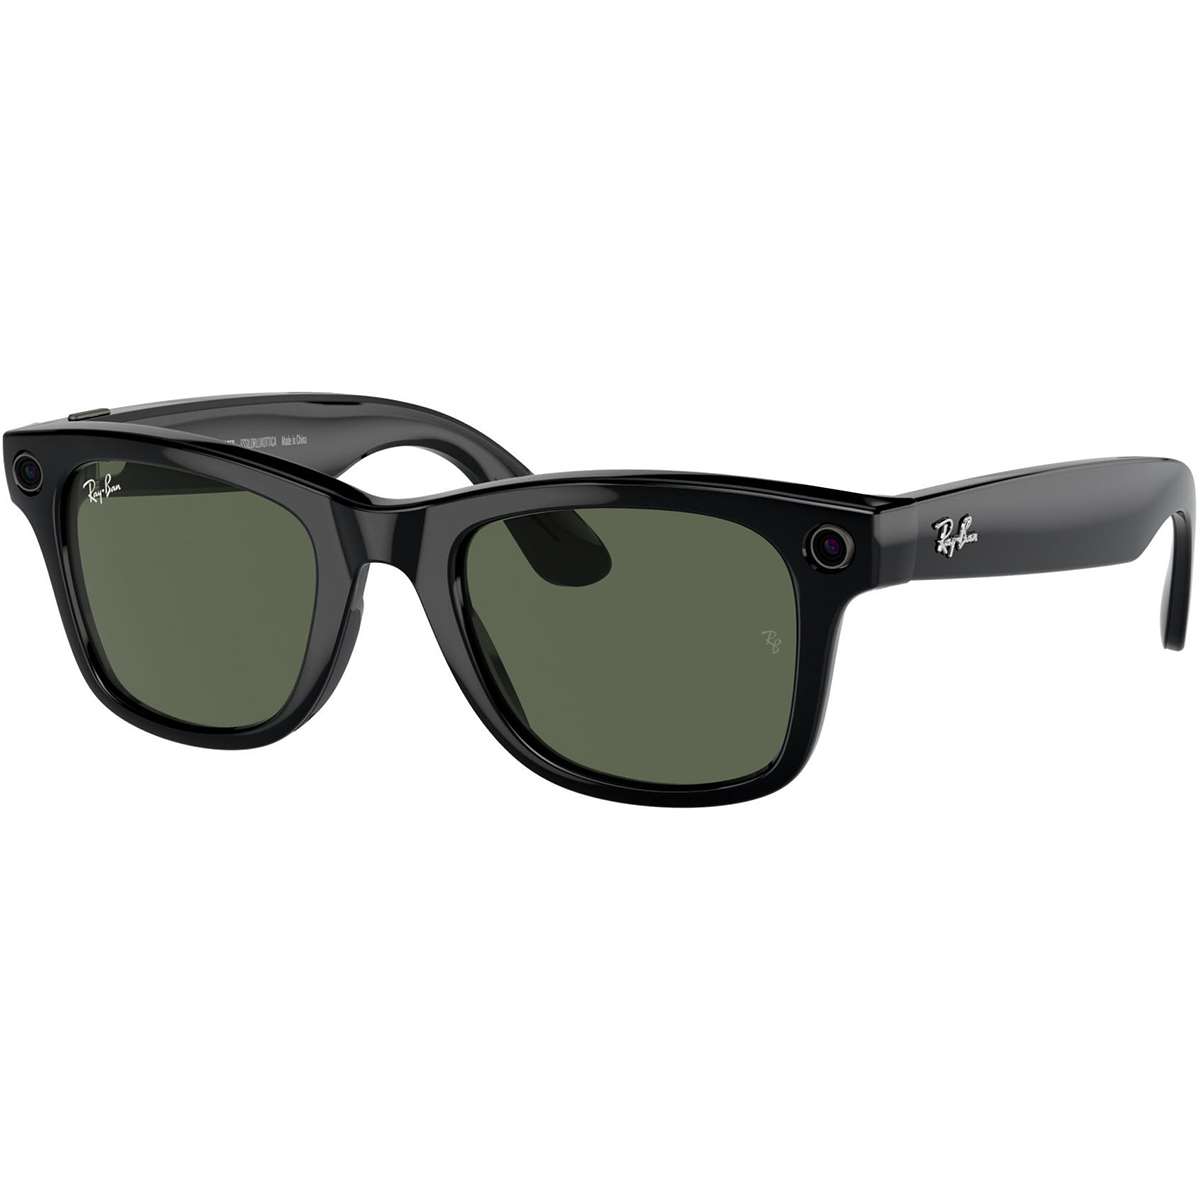 Смарт-очки Ray-Ban | Meta Wayfarer Standard - Shiny Black/G-15 Green (RW4006 601/71 50-22)